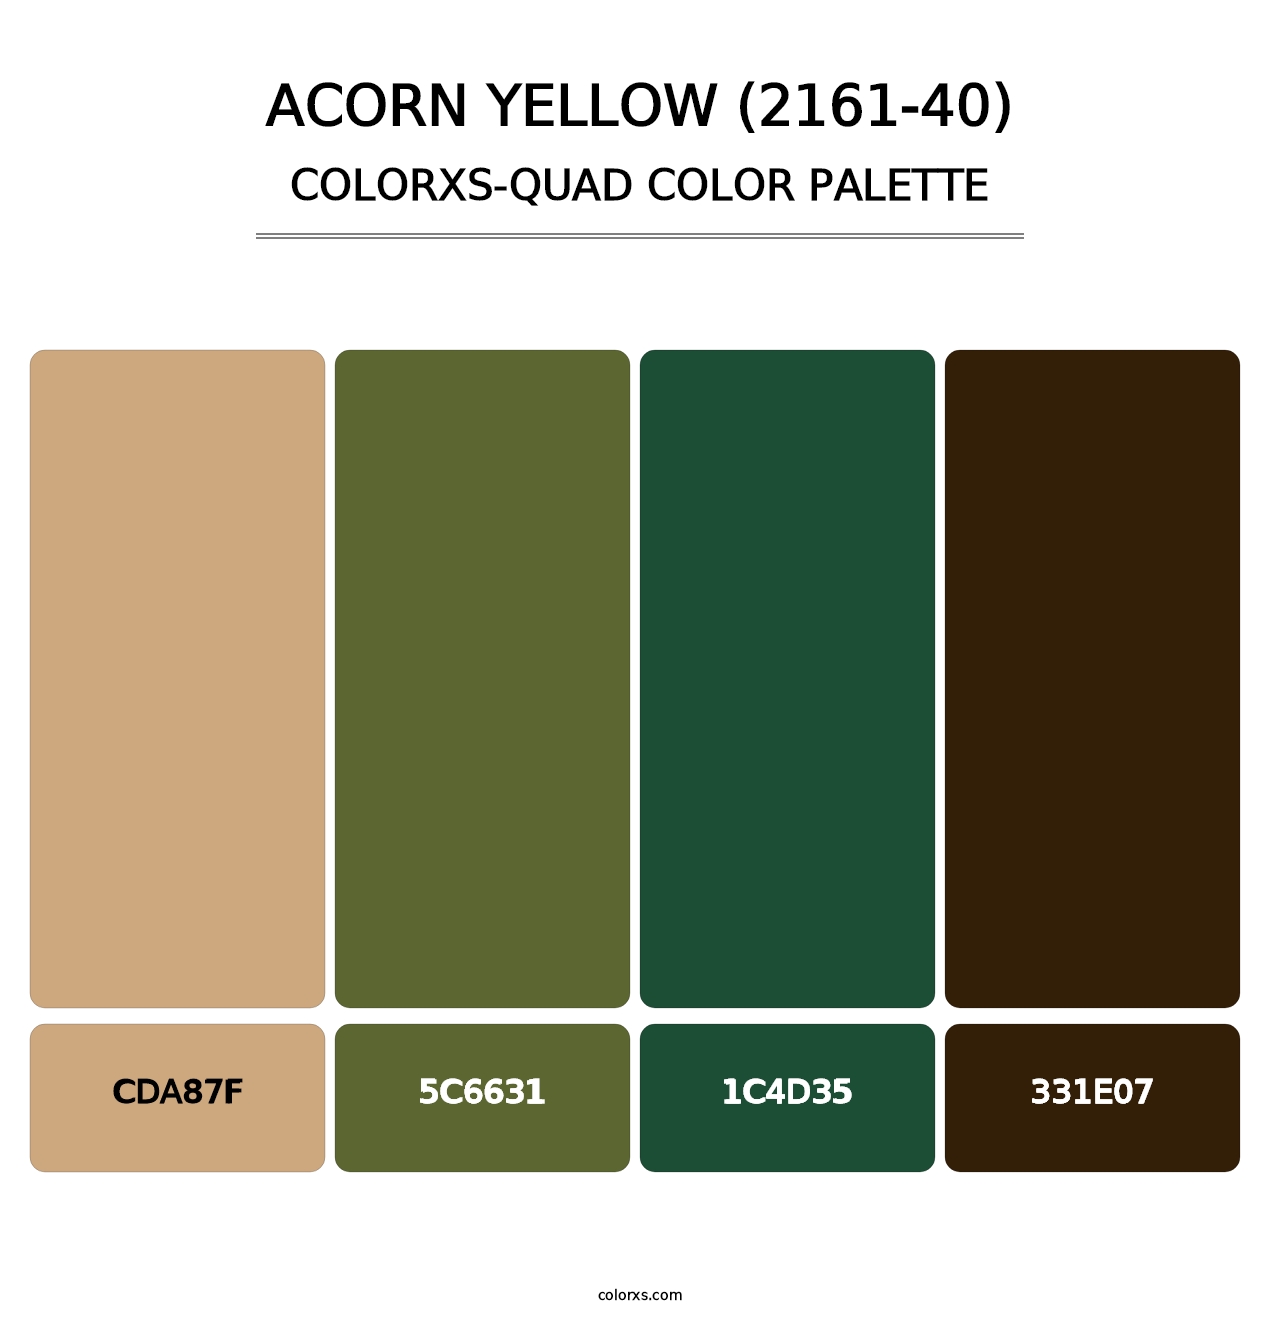 Acorn Yellow (2161-40) - Colorxs Quad Palette